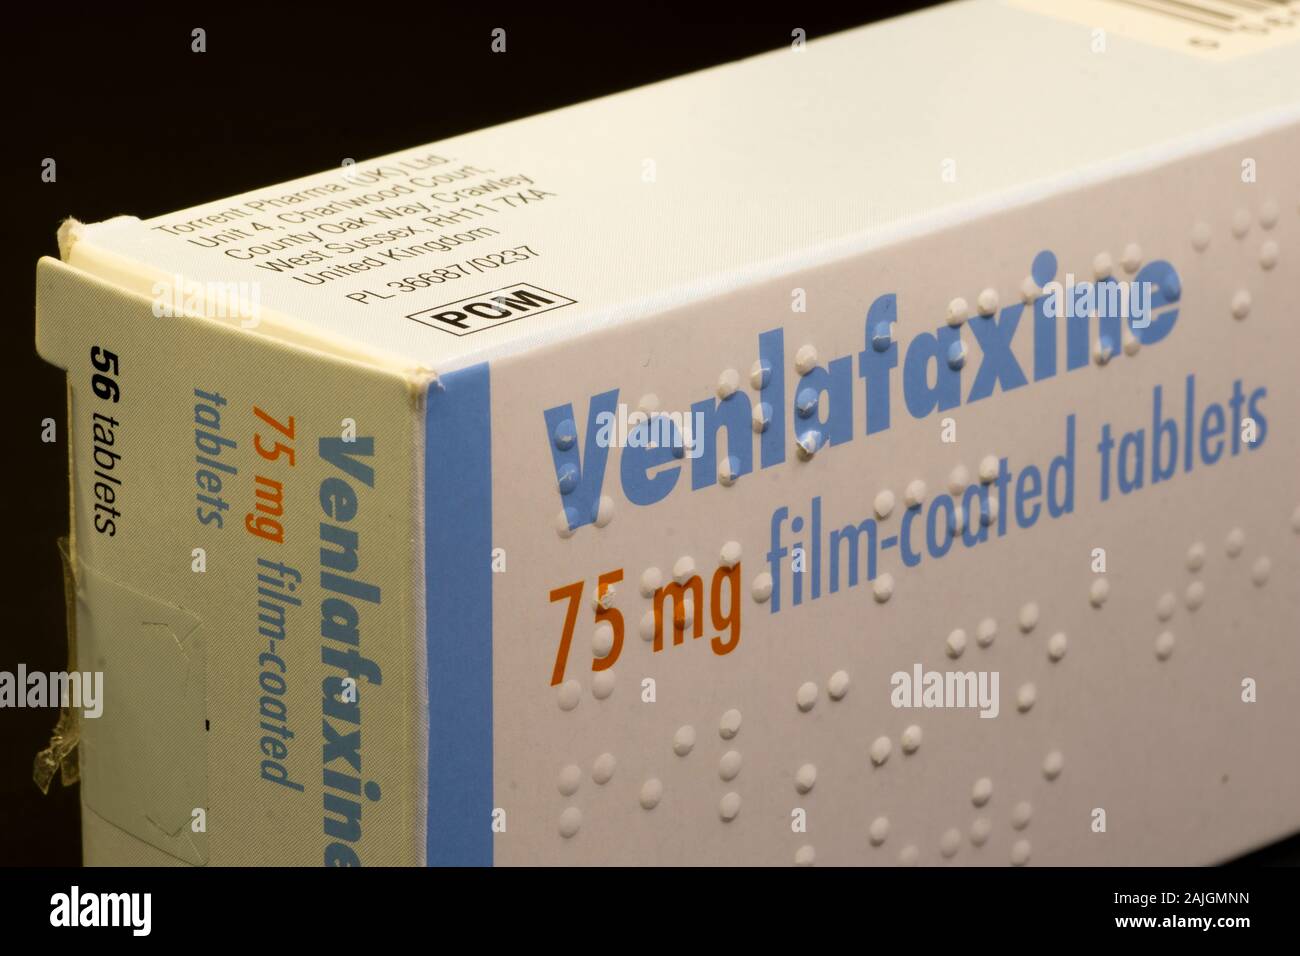 Box mit Venlafaxin-Tabletten, ein Antidepressivum der  Serotonin-Noradrenalin-Wiederaufnahmehemmer-Klasse Stockfotografie - Alamy